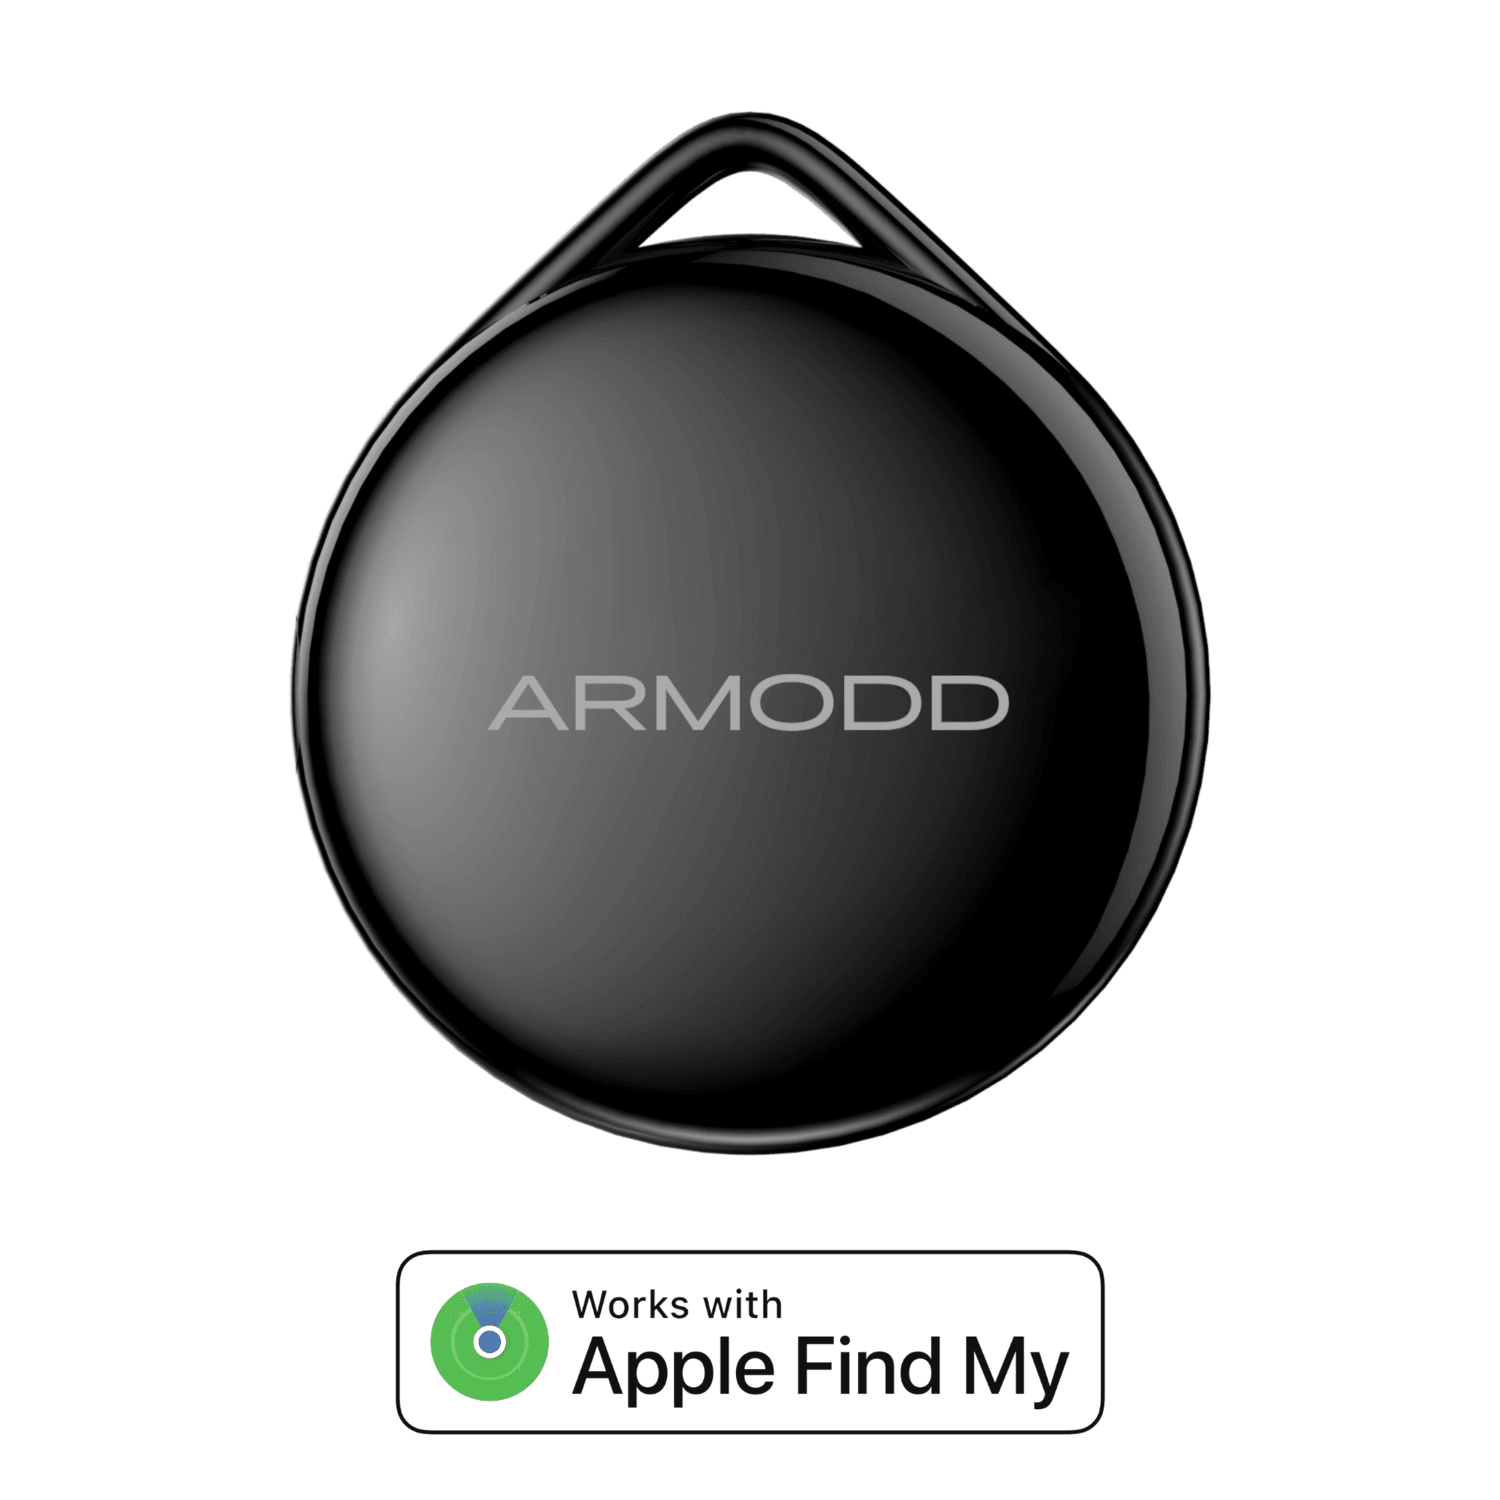 ARMODD iTag černý (AirTag alternativa) s podporou Apple Find My (Najít)